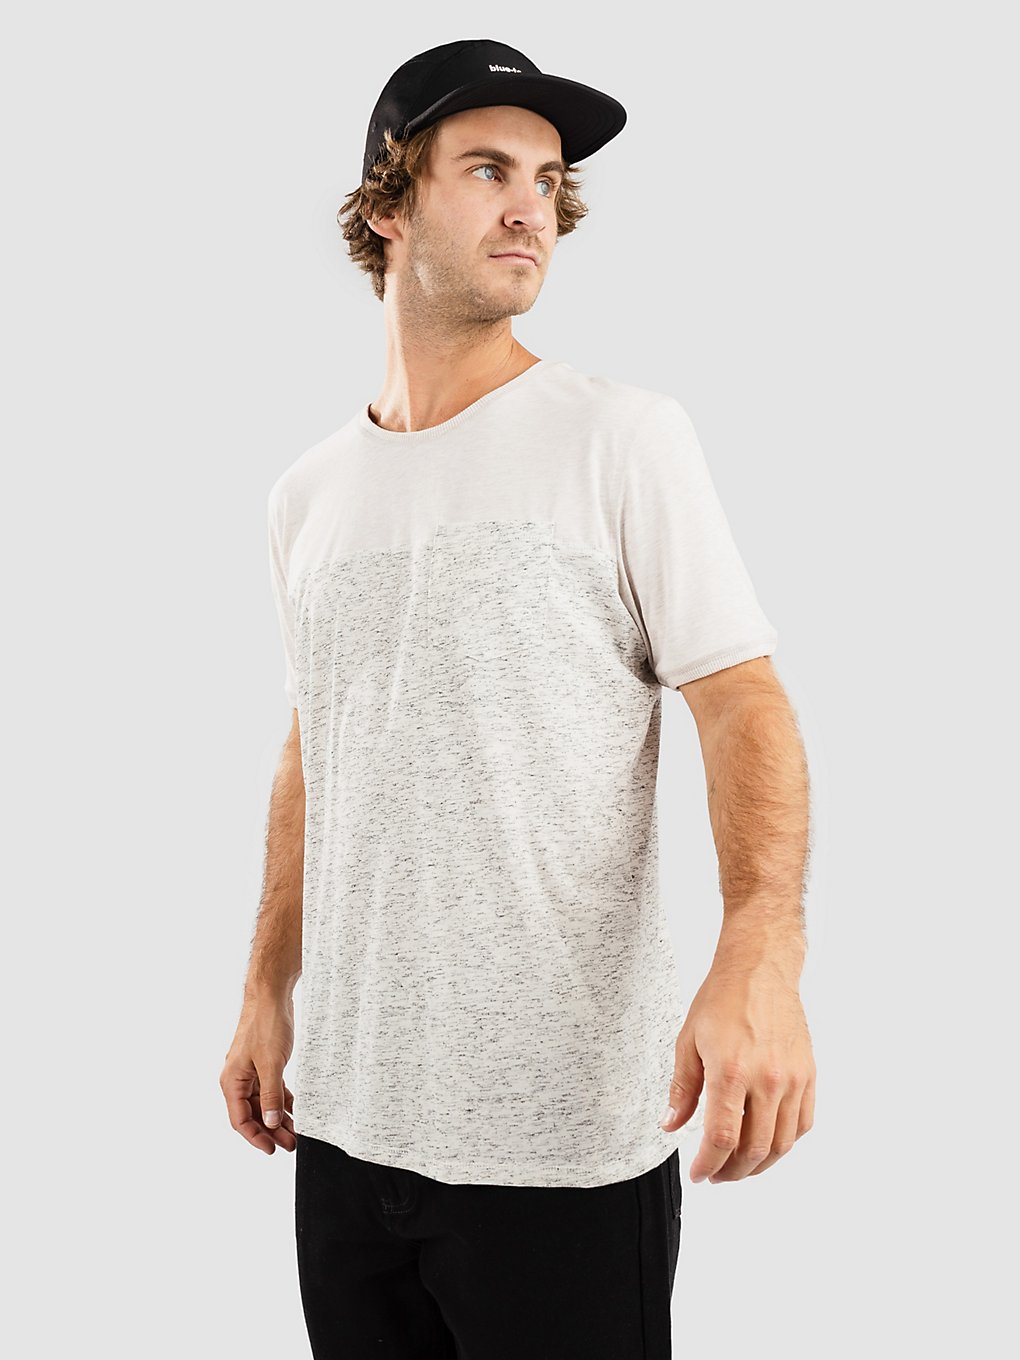 Kazane Filip T-Shirt whtblk kaufen